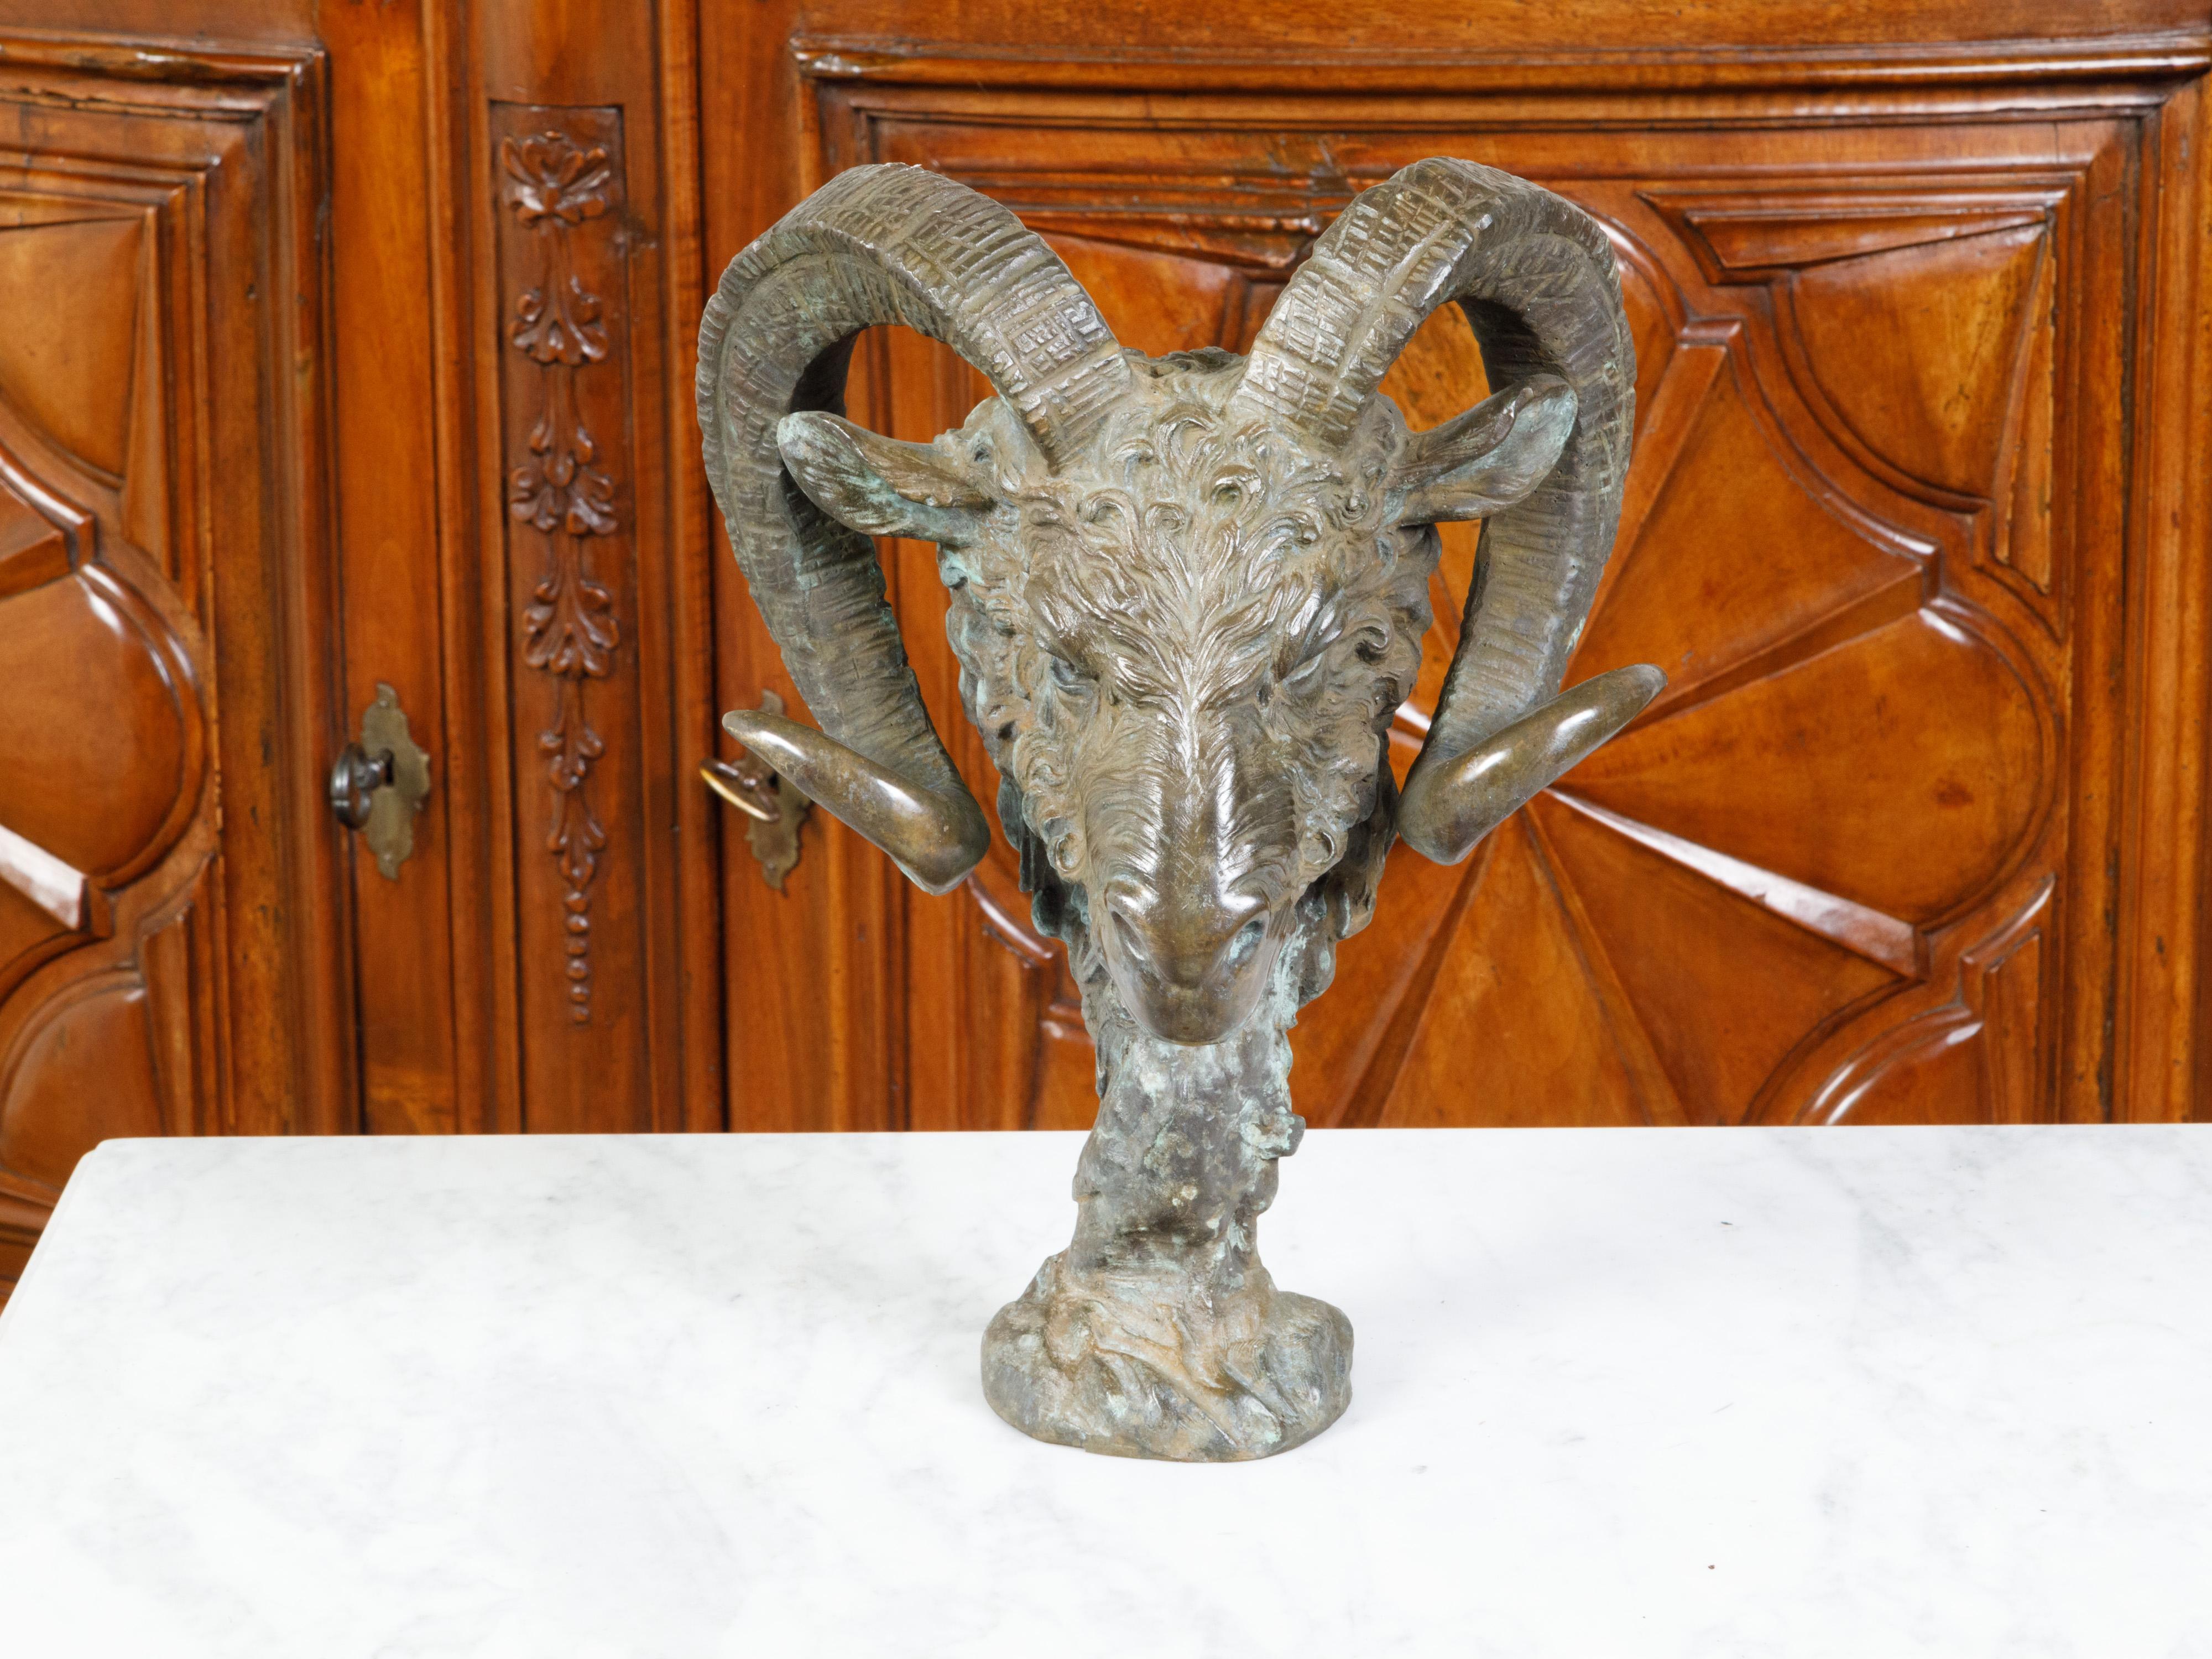 Une sculpture italienne en bronze coulé du milieu du XXe siècle, représentant une tête de bélier. Créée en Italie au cours de la période du milieu du siècle dernier, cette sculpture en bronze capte notre attention par sa représentation saisissante